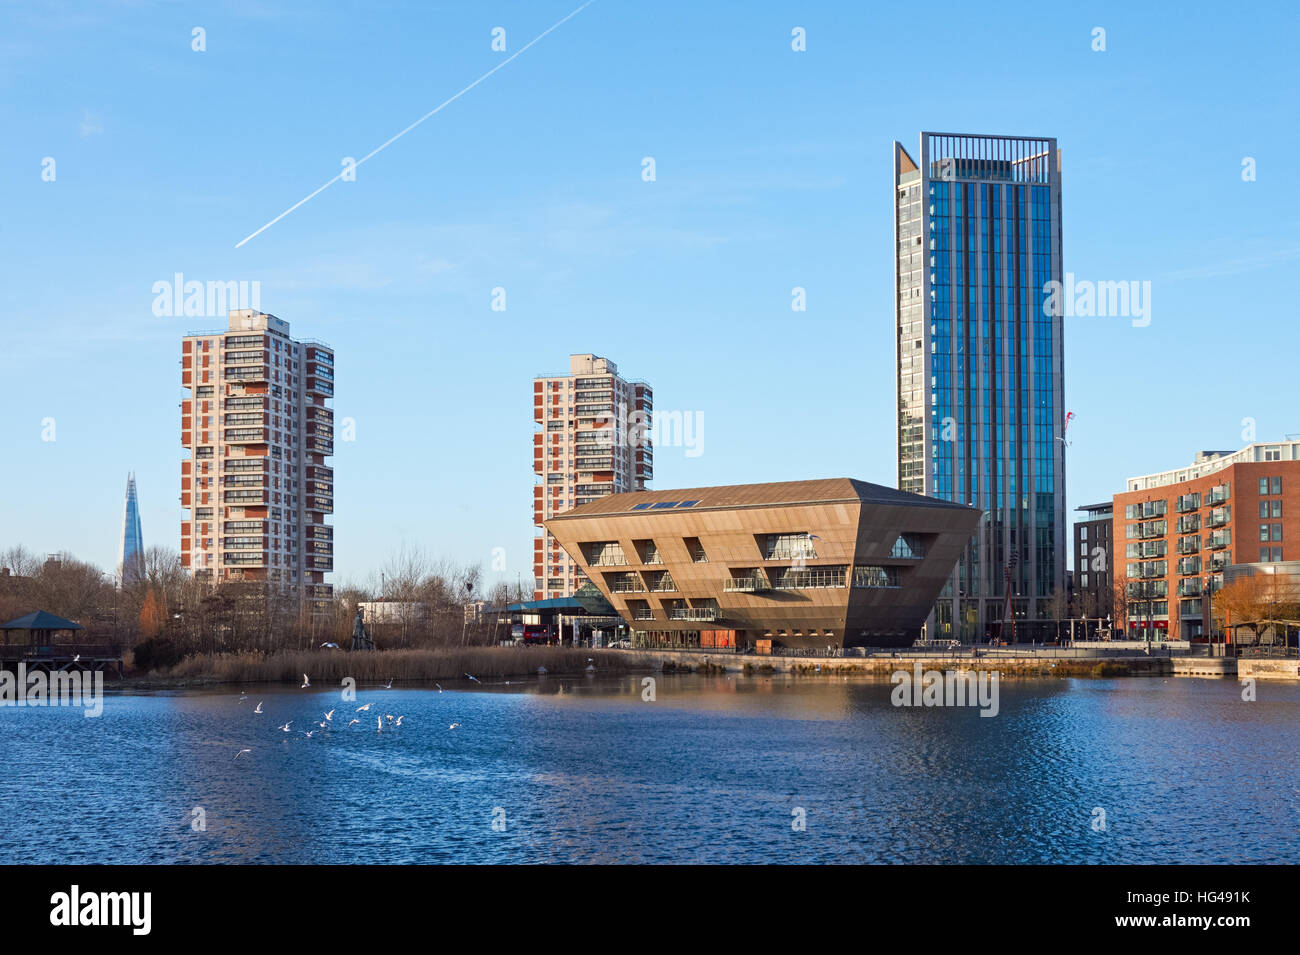 Bâtiment moderne de la Bibliothèque canadienne de l'eau avec des blocs résidentiels derrière, Londres Angleterre Royaume-Uni UK Banque D'Images